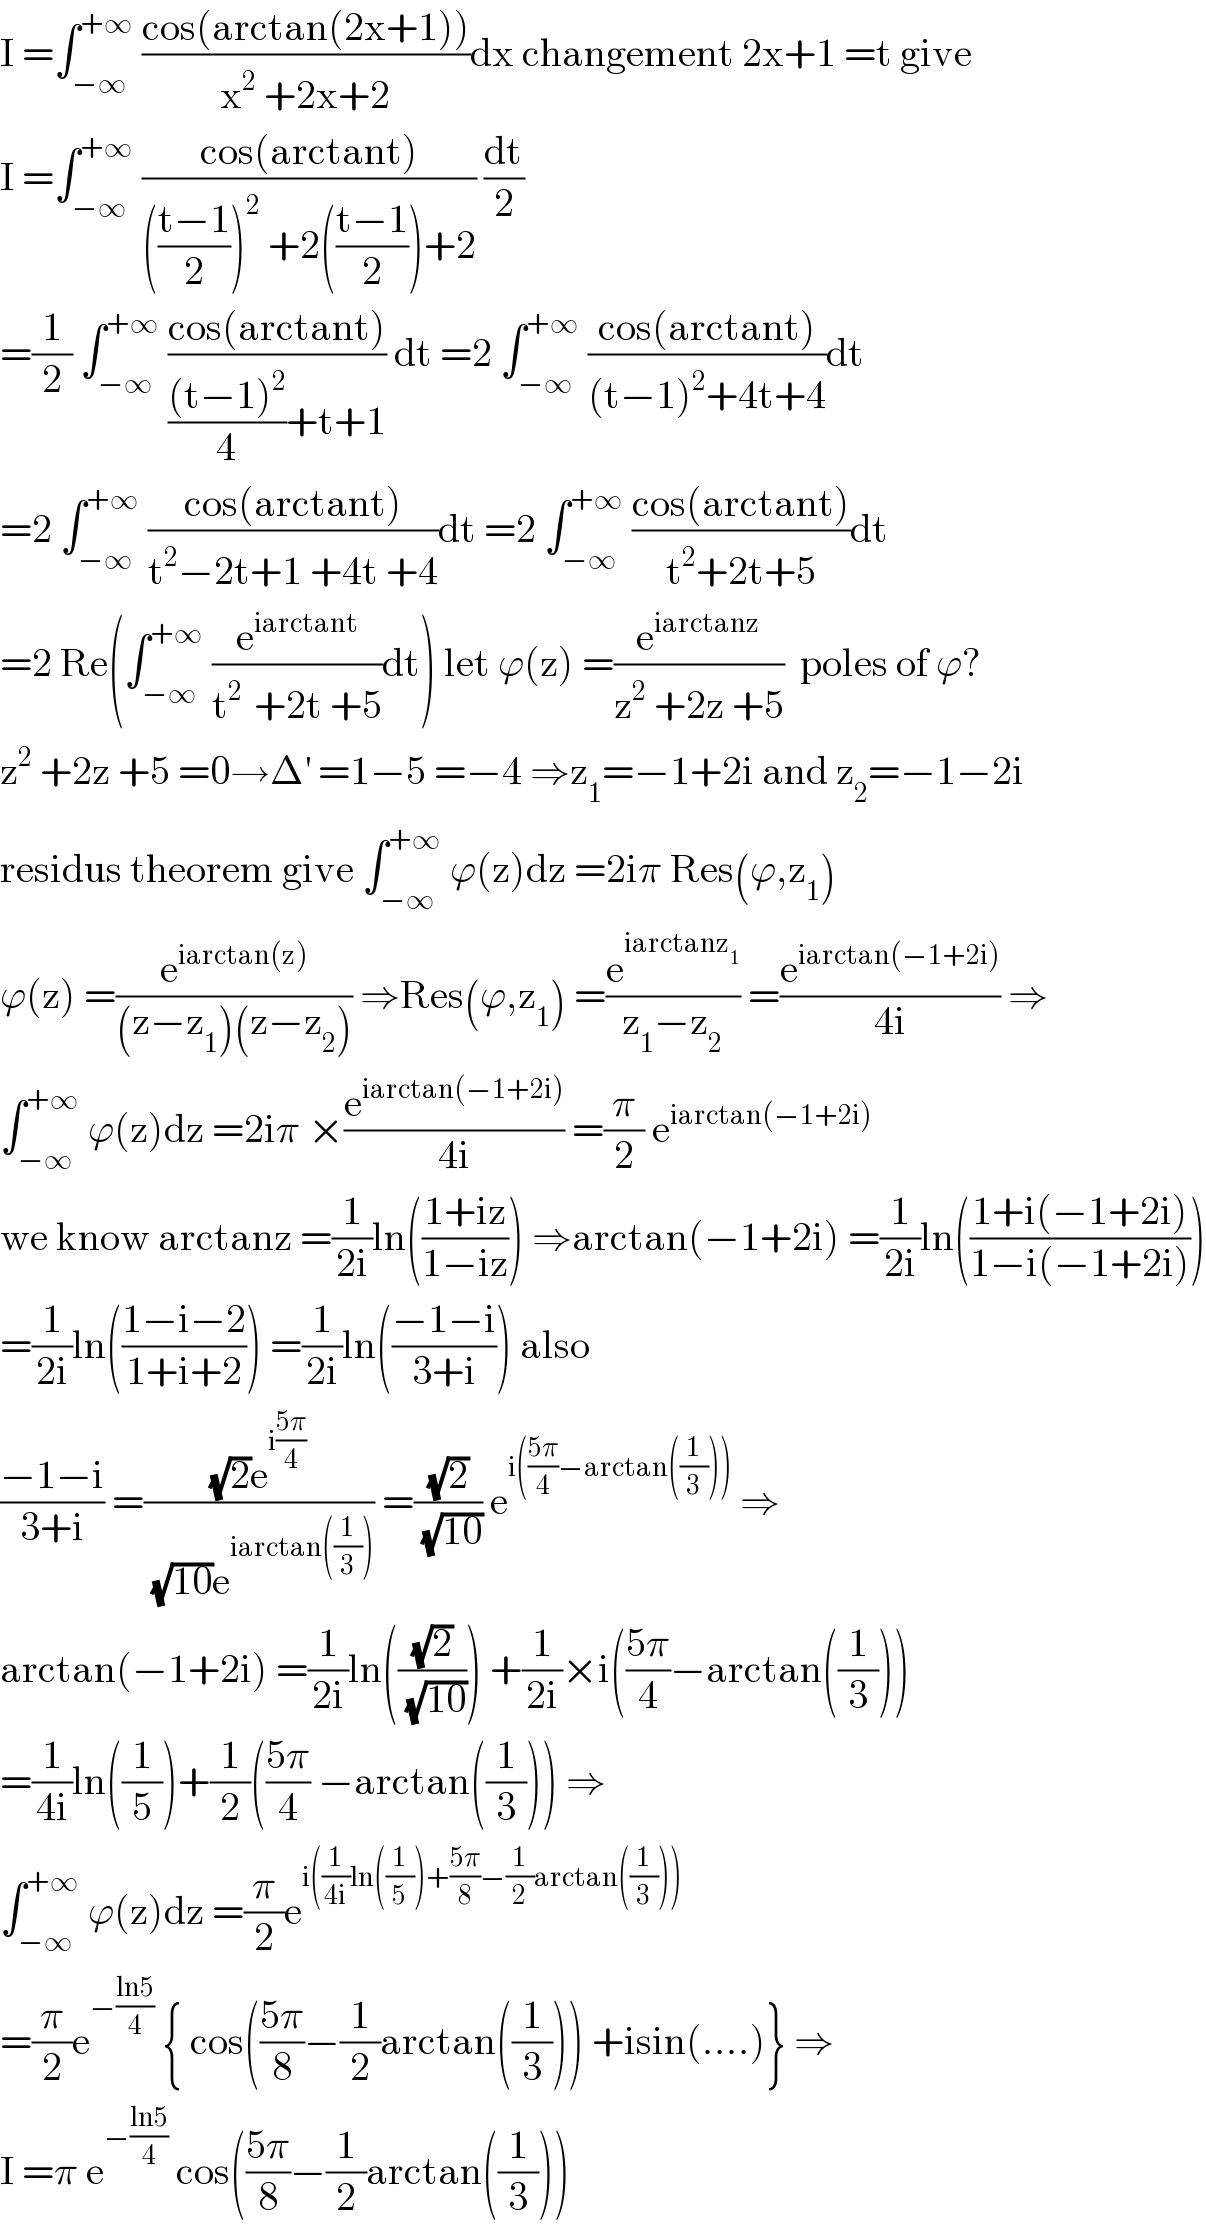 I =∫_(−∞) ^(+∞)  ((cos(arctan(2x+1)))/(x^2  +2x+2))dx changement 2x+1 =t give  I =∫_(−∞) ^(+∞)  ((cos(arctant))/((((t−1)/2))^2  +2(((t−1)/2))+2)) (dt/2)  =(1/2) ∫_(−∞) ^(+∞)  ((cos(arctant))/((((t−1)^2 )/4)+t+1)) dt =2 ∫_(−∞) ^(+∞)  ((cos(arctant))/((t−1)^2 +4t+4))dt  =2 ∫_(−∞) ^(+∞)  ((cos(arctant))/(t^2 −2t+1 +4t +4))dt =2 ∫_(−∞) ^(+∞)  ((cos(arctant))/(t^2 +2t+5))dt  =2 Re(∫_(−∞) ^(+∞)  (e^(iarctant) /(t^(2 )  +2t +5))dt) let ϕ(z) =(e^(iarctanz) /(z^2  +2z +5))  poles of ϕ?  z^2  +2z +5 =0→Δ^′  =1−5 =−4 ⇒z_1 =−1+2i and z_2 =−1−2i  residus theorem give ∫_(−∞) ^(+∞)  ϕ(z)dz =2iπ Res(ϕ,z_1 )  ϕ(z) =(e^(iarctan(z)) /((z−z_1 )(z−z_2 ))) ⇒Res(ϕ,z_1 ) =(e^(iarctanz_1 ) /(z_1 −z_2 )) =(e^(iarctan(−1+2i)) /(4i)) ⇒  ∫_(−∞) ^(+∞)  ϕ(z)dz =2iπ ×(e^(iarctan(−1+2i)) /(4i)) =(π/2) e^(iarctan(−1+2i))   we know arctanz =(1/(2i))ln(((1+iz)/(1−iz))) ⇒arctan(−1+2i) =(1/(2i))ln(((1+i(−1+2i))/(1−i(−1+2i))))  =(1/(2i))ln(((1−i−2)/(1+i+2))) =(1/(2i))ln(((−1−i)/(3+i))) also  ((−1−i)/(3+i)) =(((√2)e^(i((5π)/4)) )/((√(10))e^(iarctan((1/3))) )) =((√2)/(√(10))) e^(i(((5π)/4)−arctan((1/3))))  ⇒  arctan(−1+2i) =(1/(2i))ln(((√2)/(√(10)))) +(1/(2i))×i(((5π)/4)−arctan((1/3)))  =(1/(4i))ln((1/5))+(1/2)(((5π)/4) −arctan((1/3))) ⇒  ∫_(−∞) ^(+∞)  ϕ(z)dz =(π/2)e^(i((1/(4i))ln((1/5))+((5π)/8)−(1/2)arctan((1/3))))   =(π/2)e^(−((ln5)/4))  { cos(((5π)/8)−(1/2)arctan((1/3))) +isin(....)} ⇒  I =π e^(−((ln5)/4))  cos(((5π)/8)−(1/2)arctan((1/3)))  